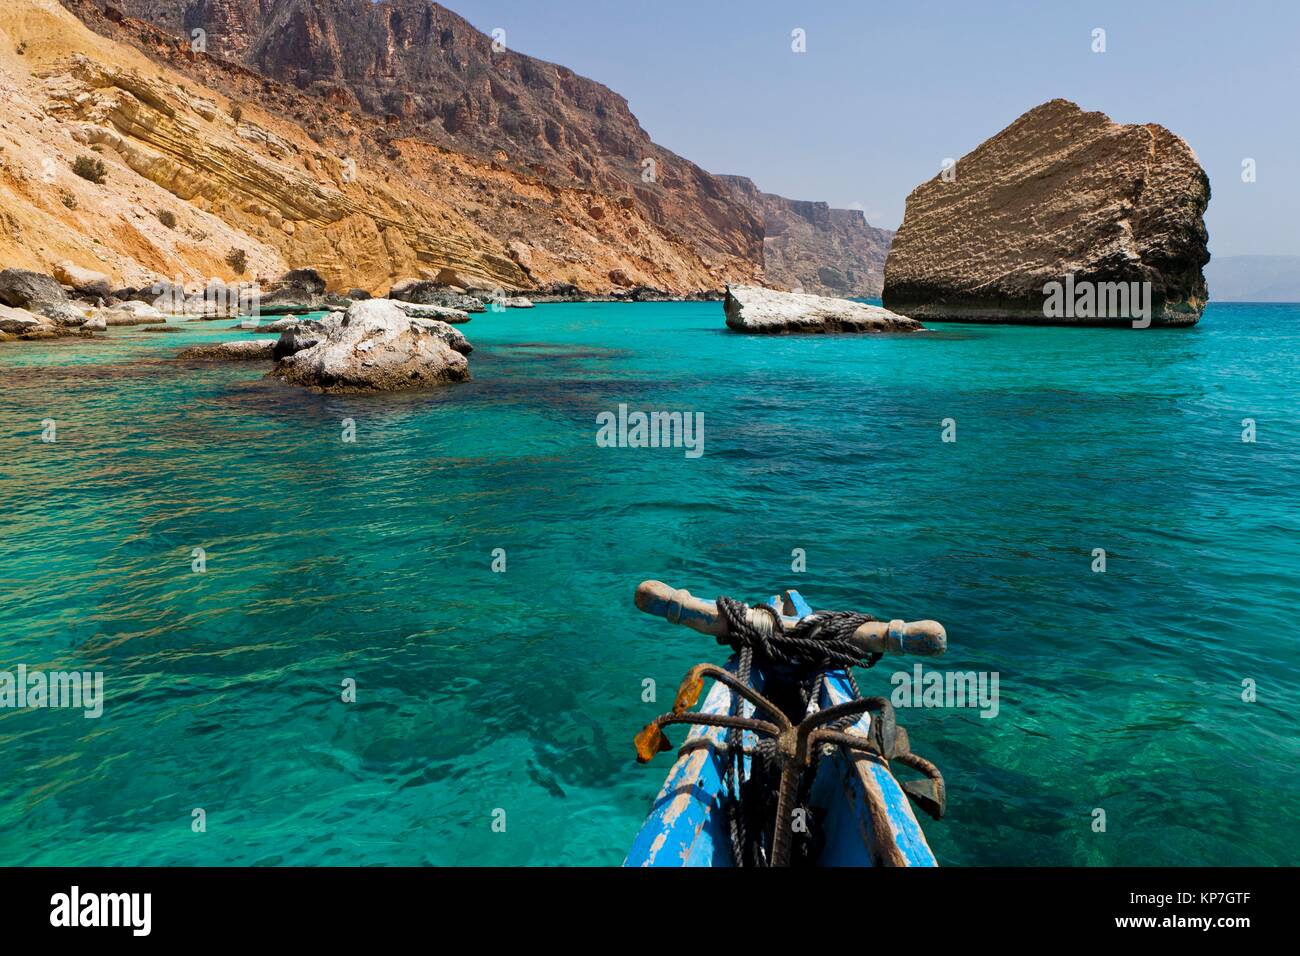 Qalansiyah, isola di Socotra, classificato come patrimonio mondiale dall' UNESCO, Aden Governatorato, Yemen, Arabia, Ovest Asiatico Foto Stock